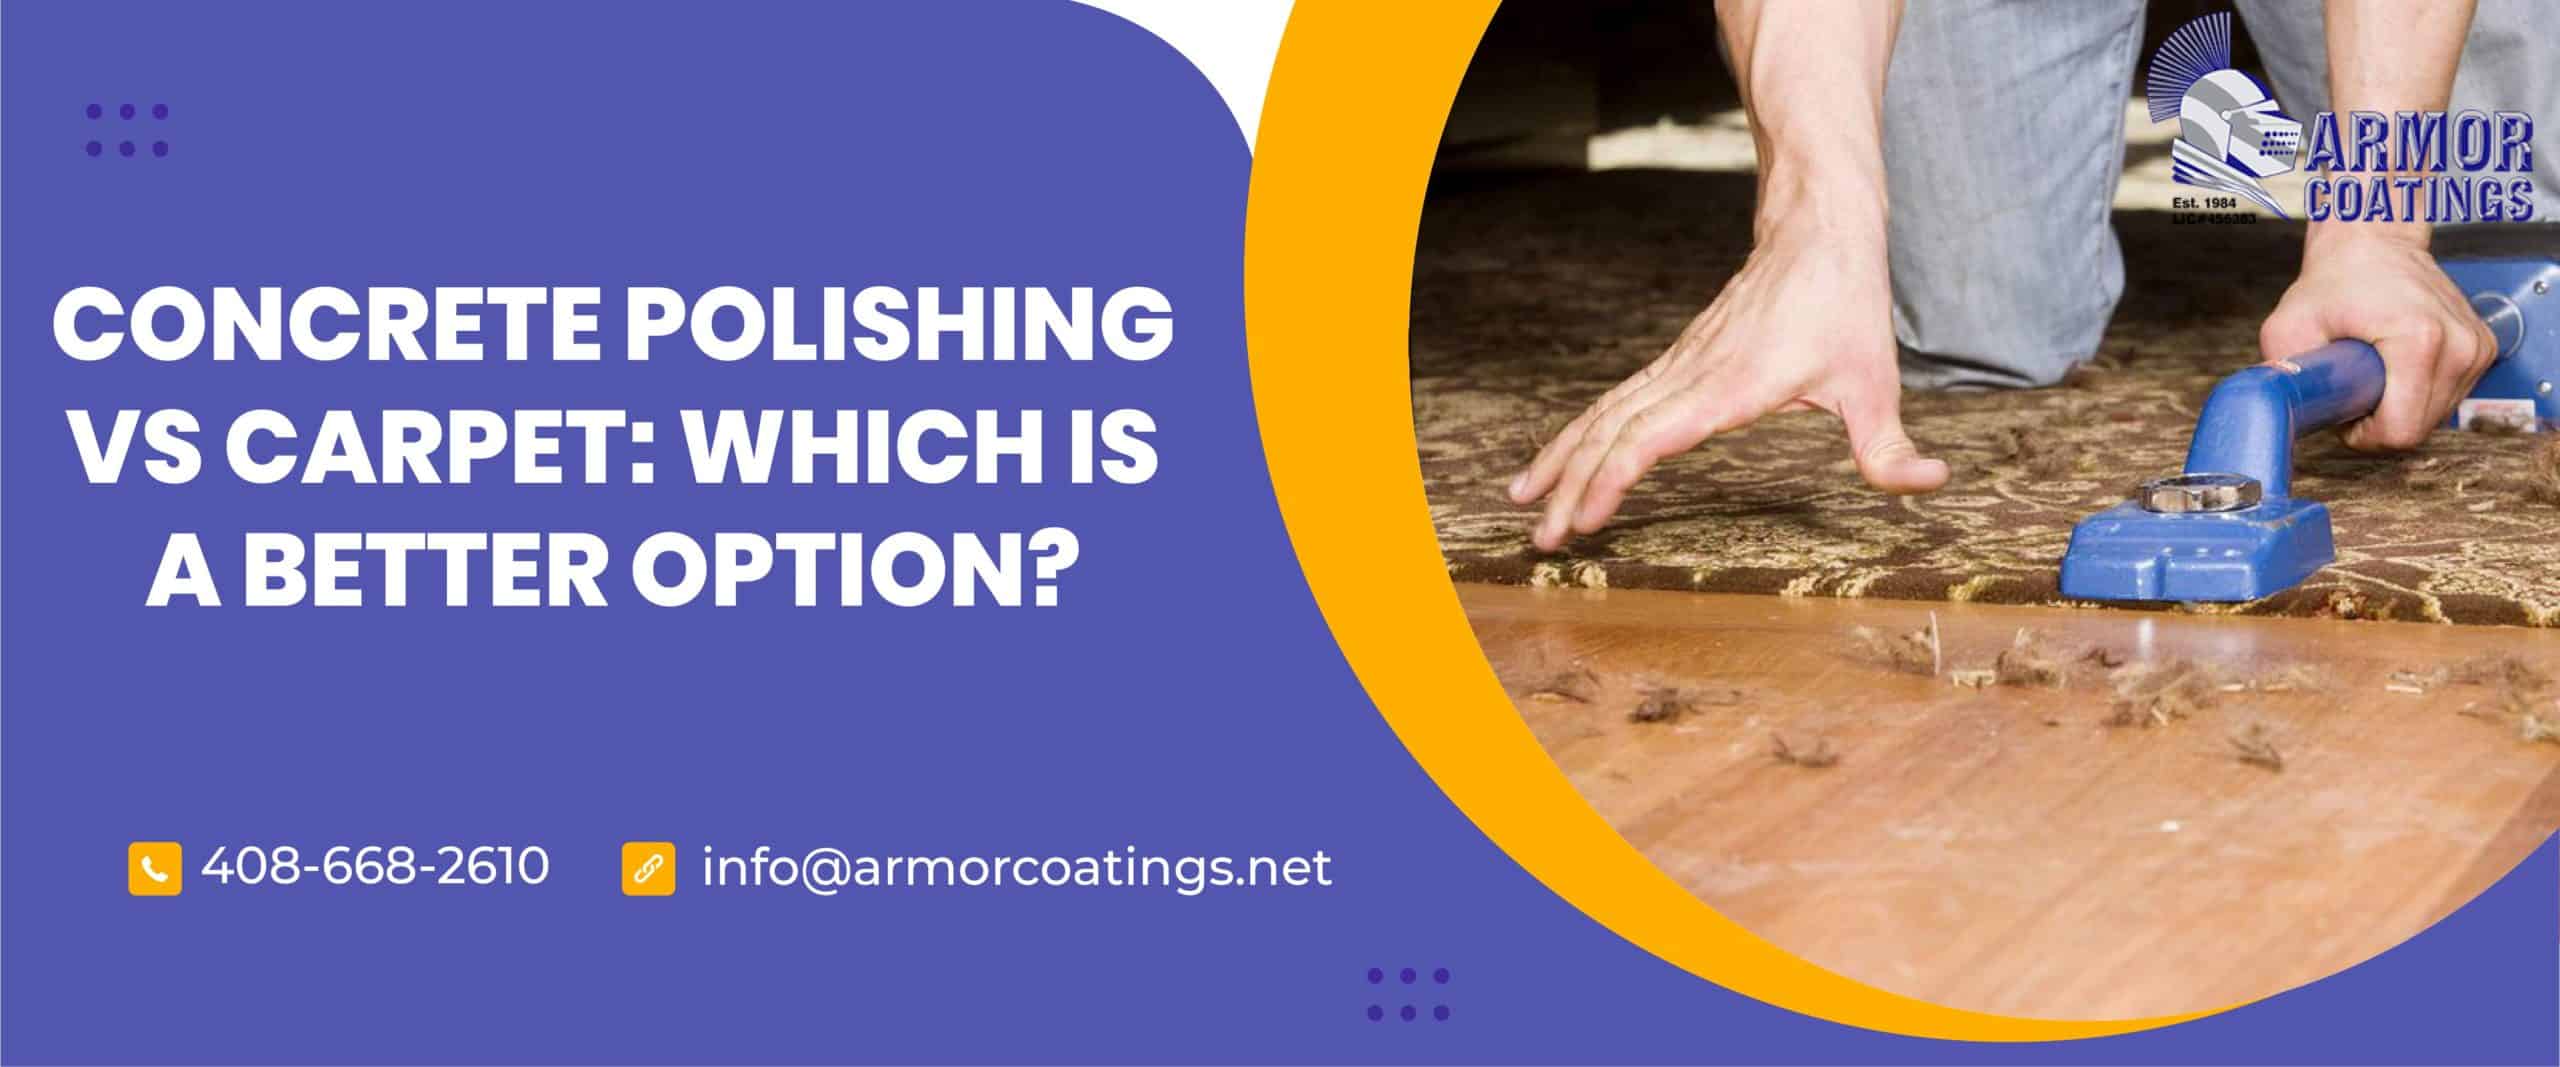 concrete polishing vs carpet